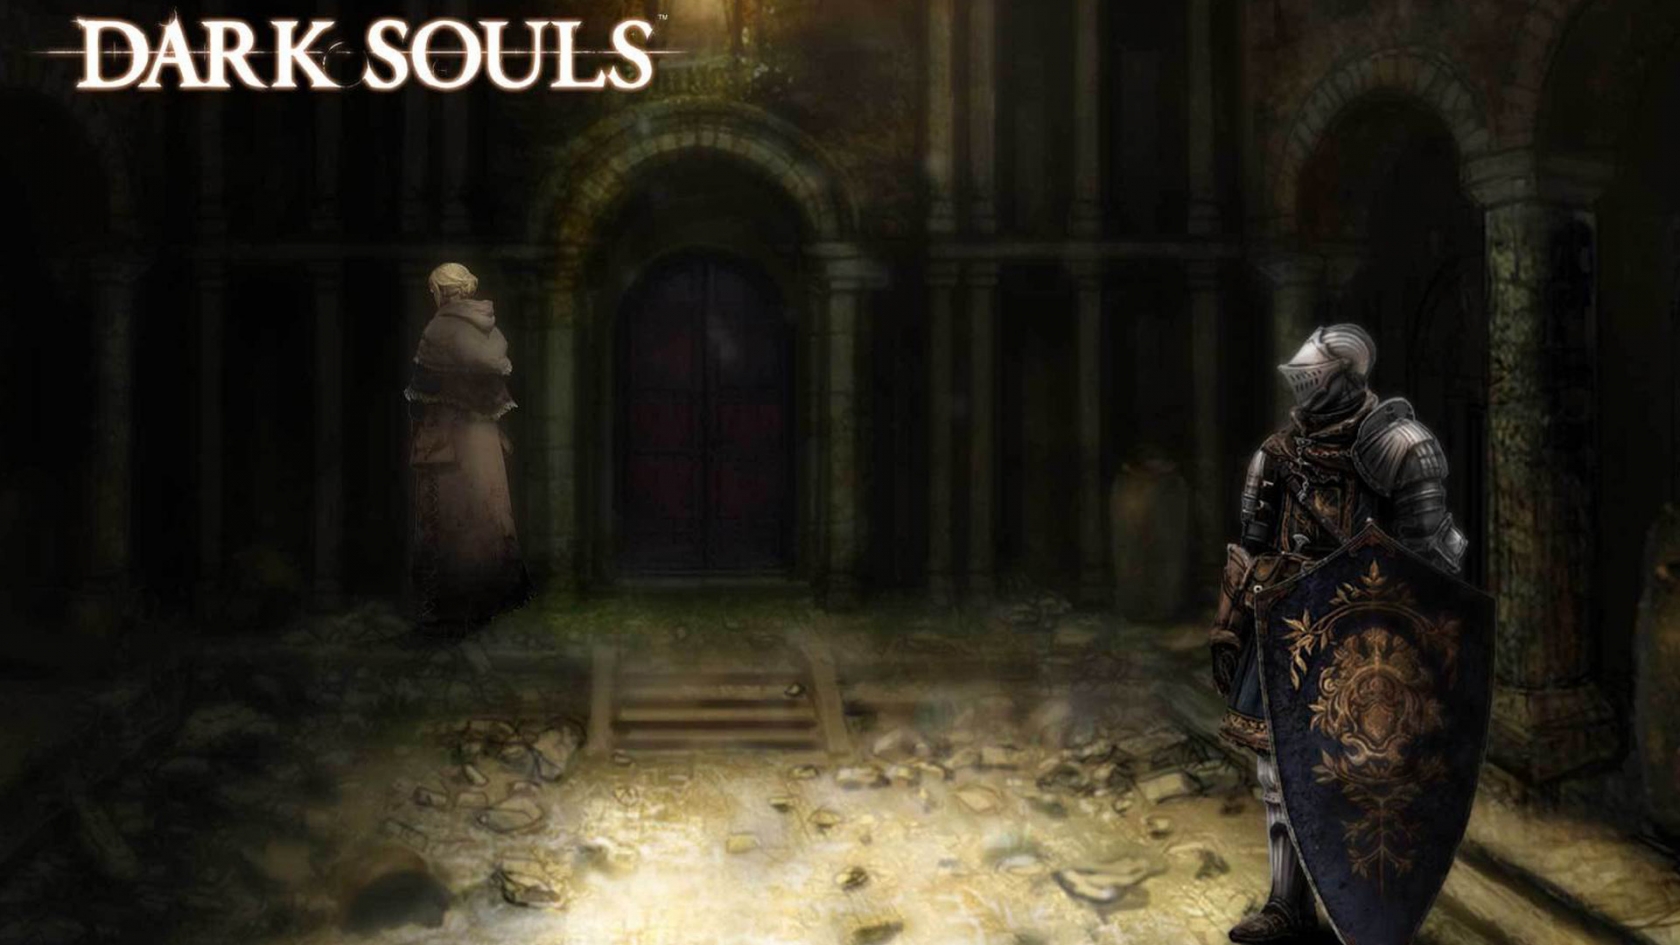 Dark Souls for 1680 x 945 HDTV resolution